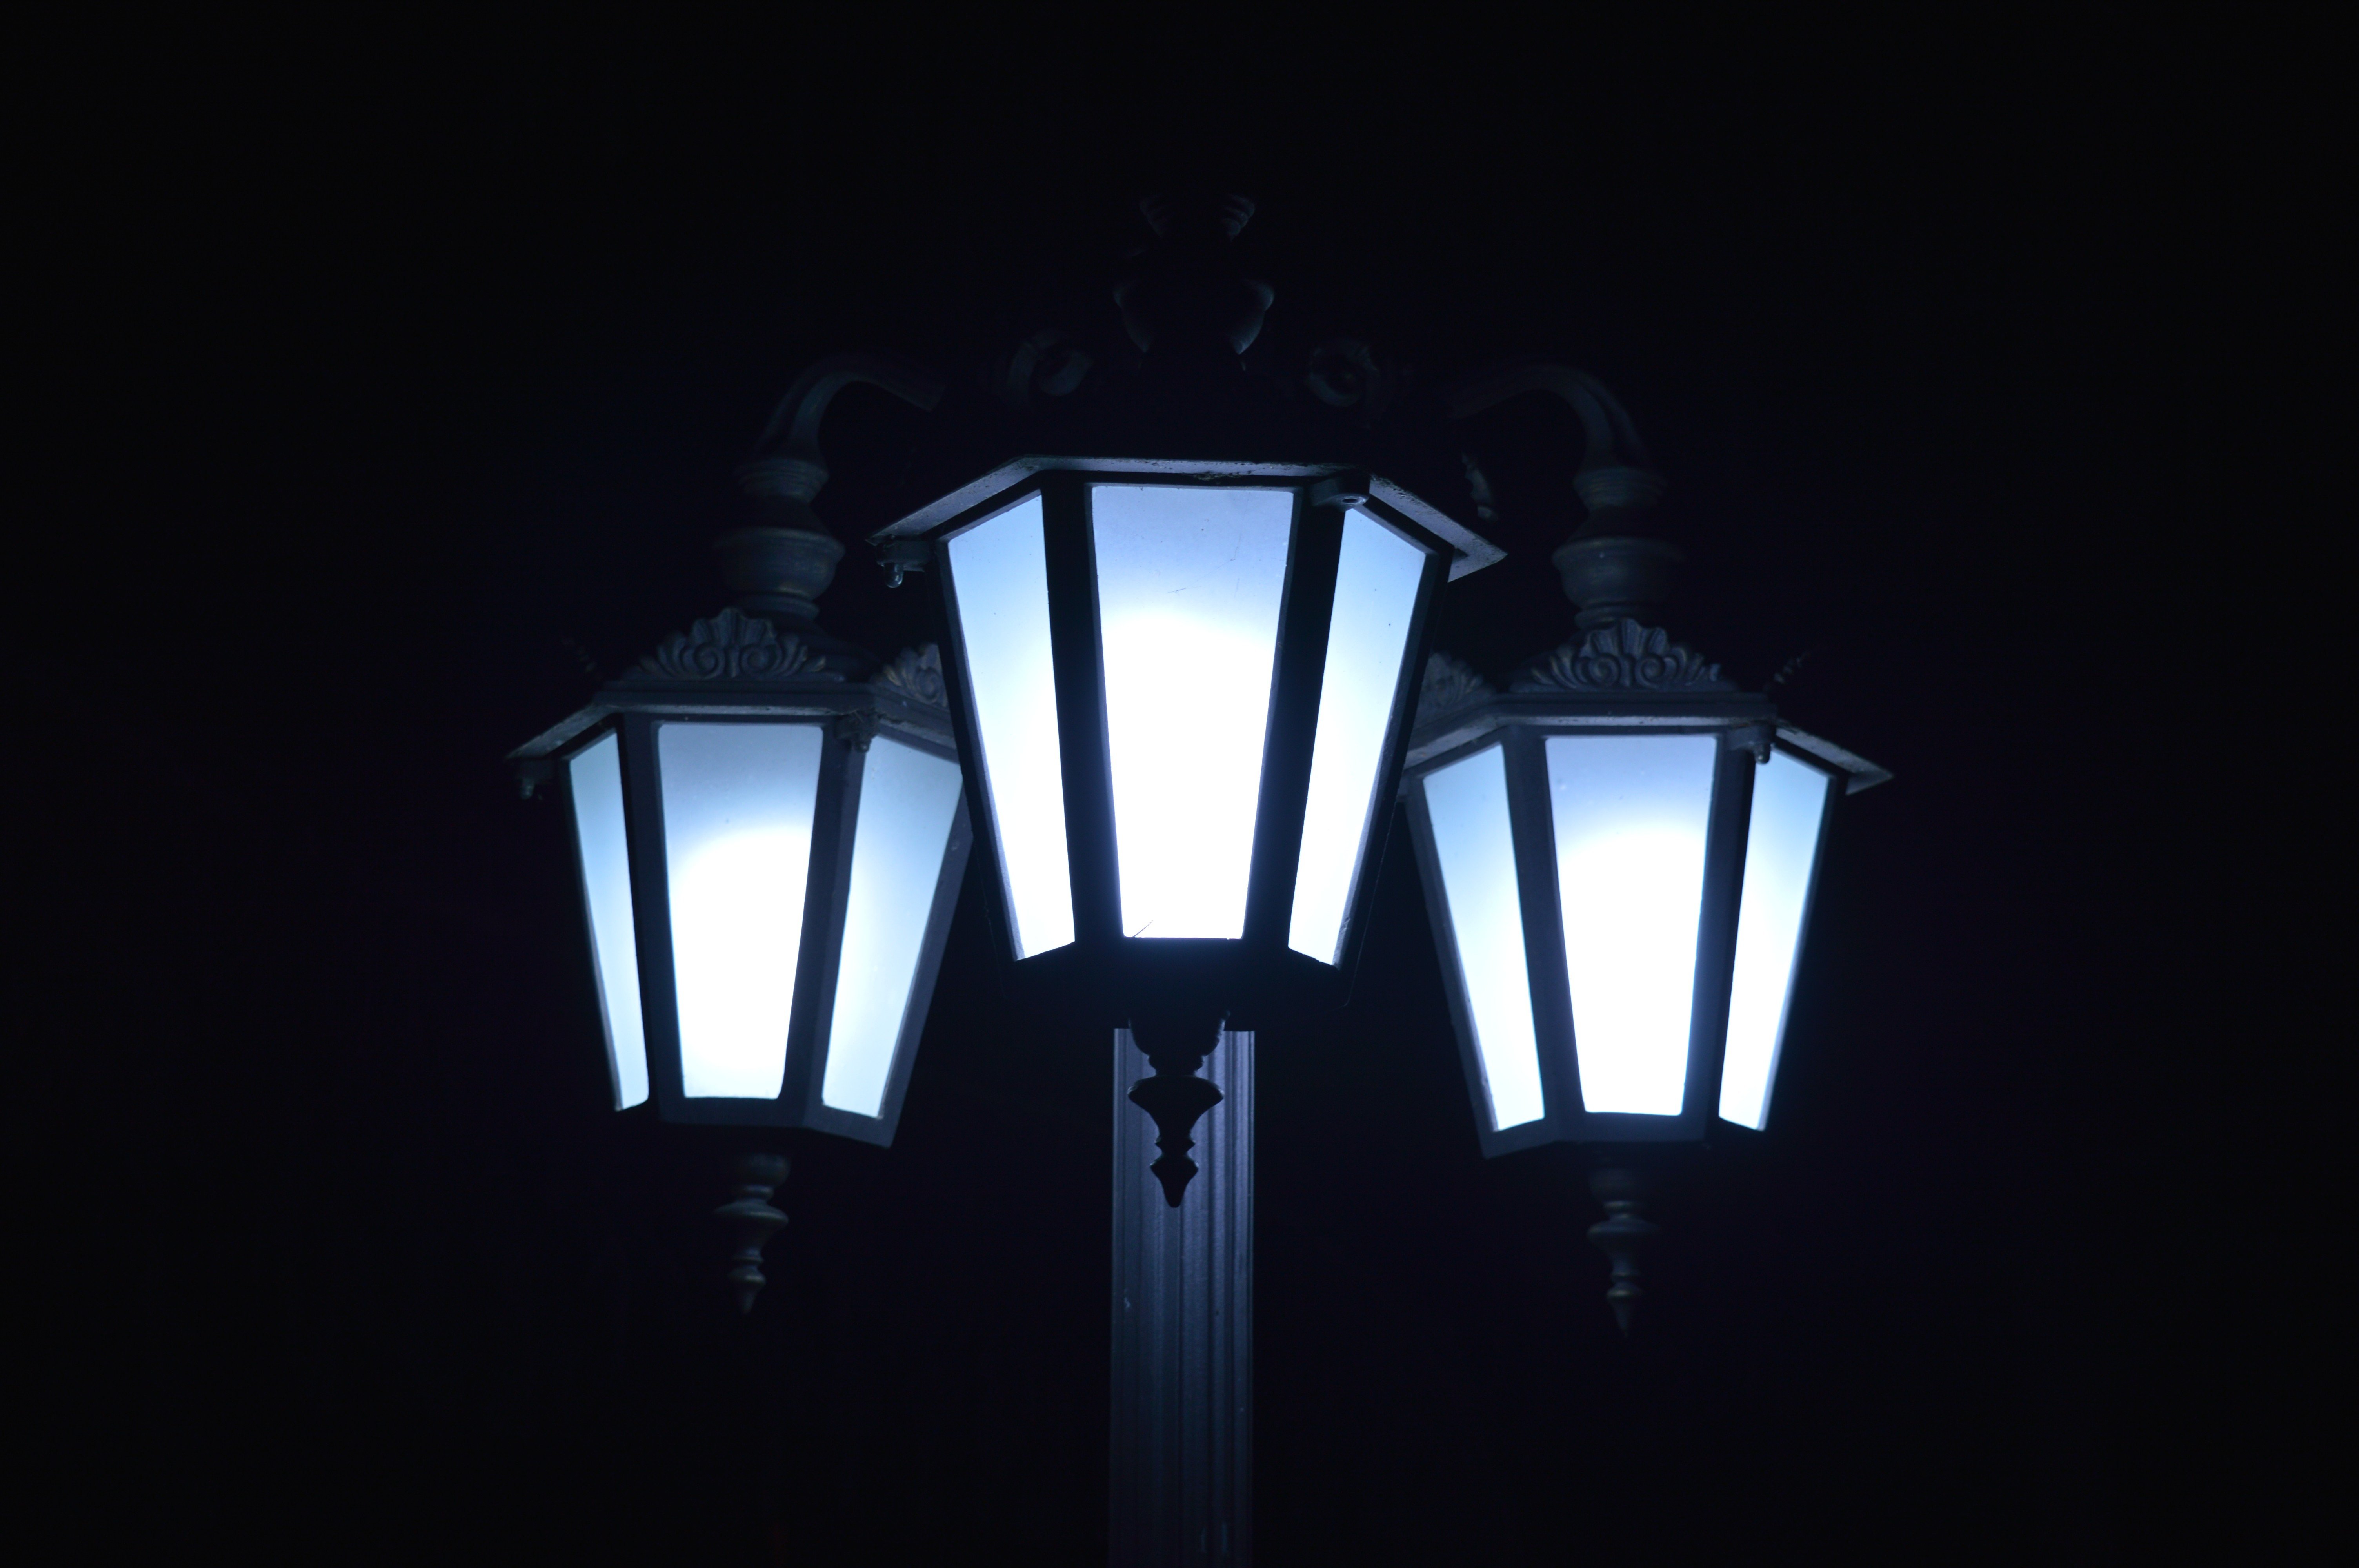 Фонари синий свет. Уличный фонарь. Уличный фонарь в темноте. Фонарь на темном фоне. Синие уличные фонари.